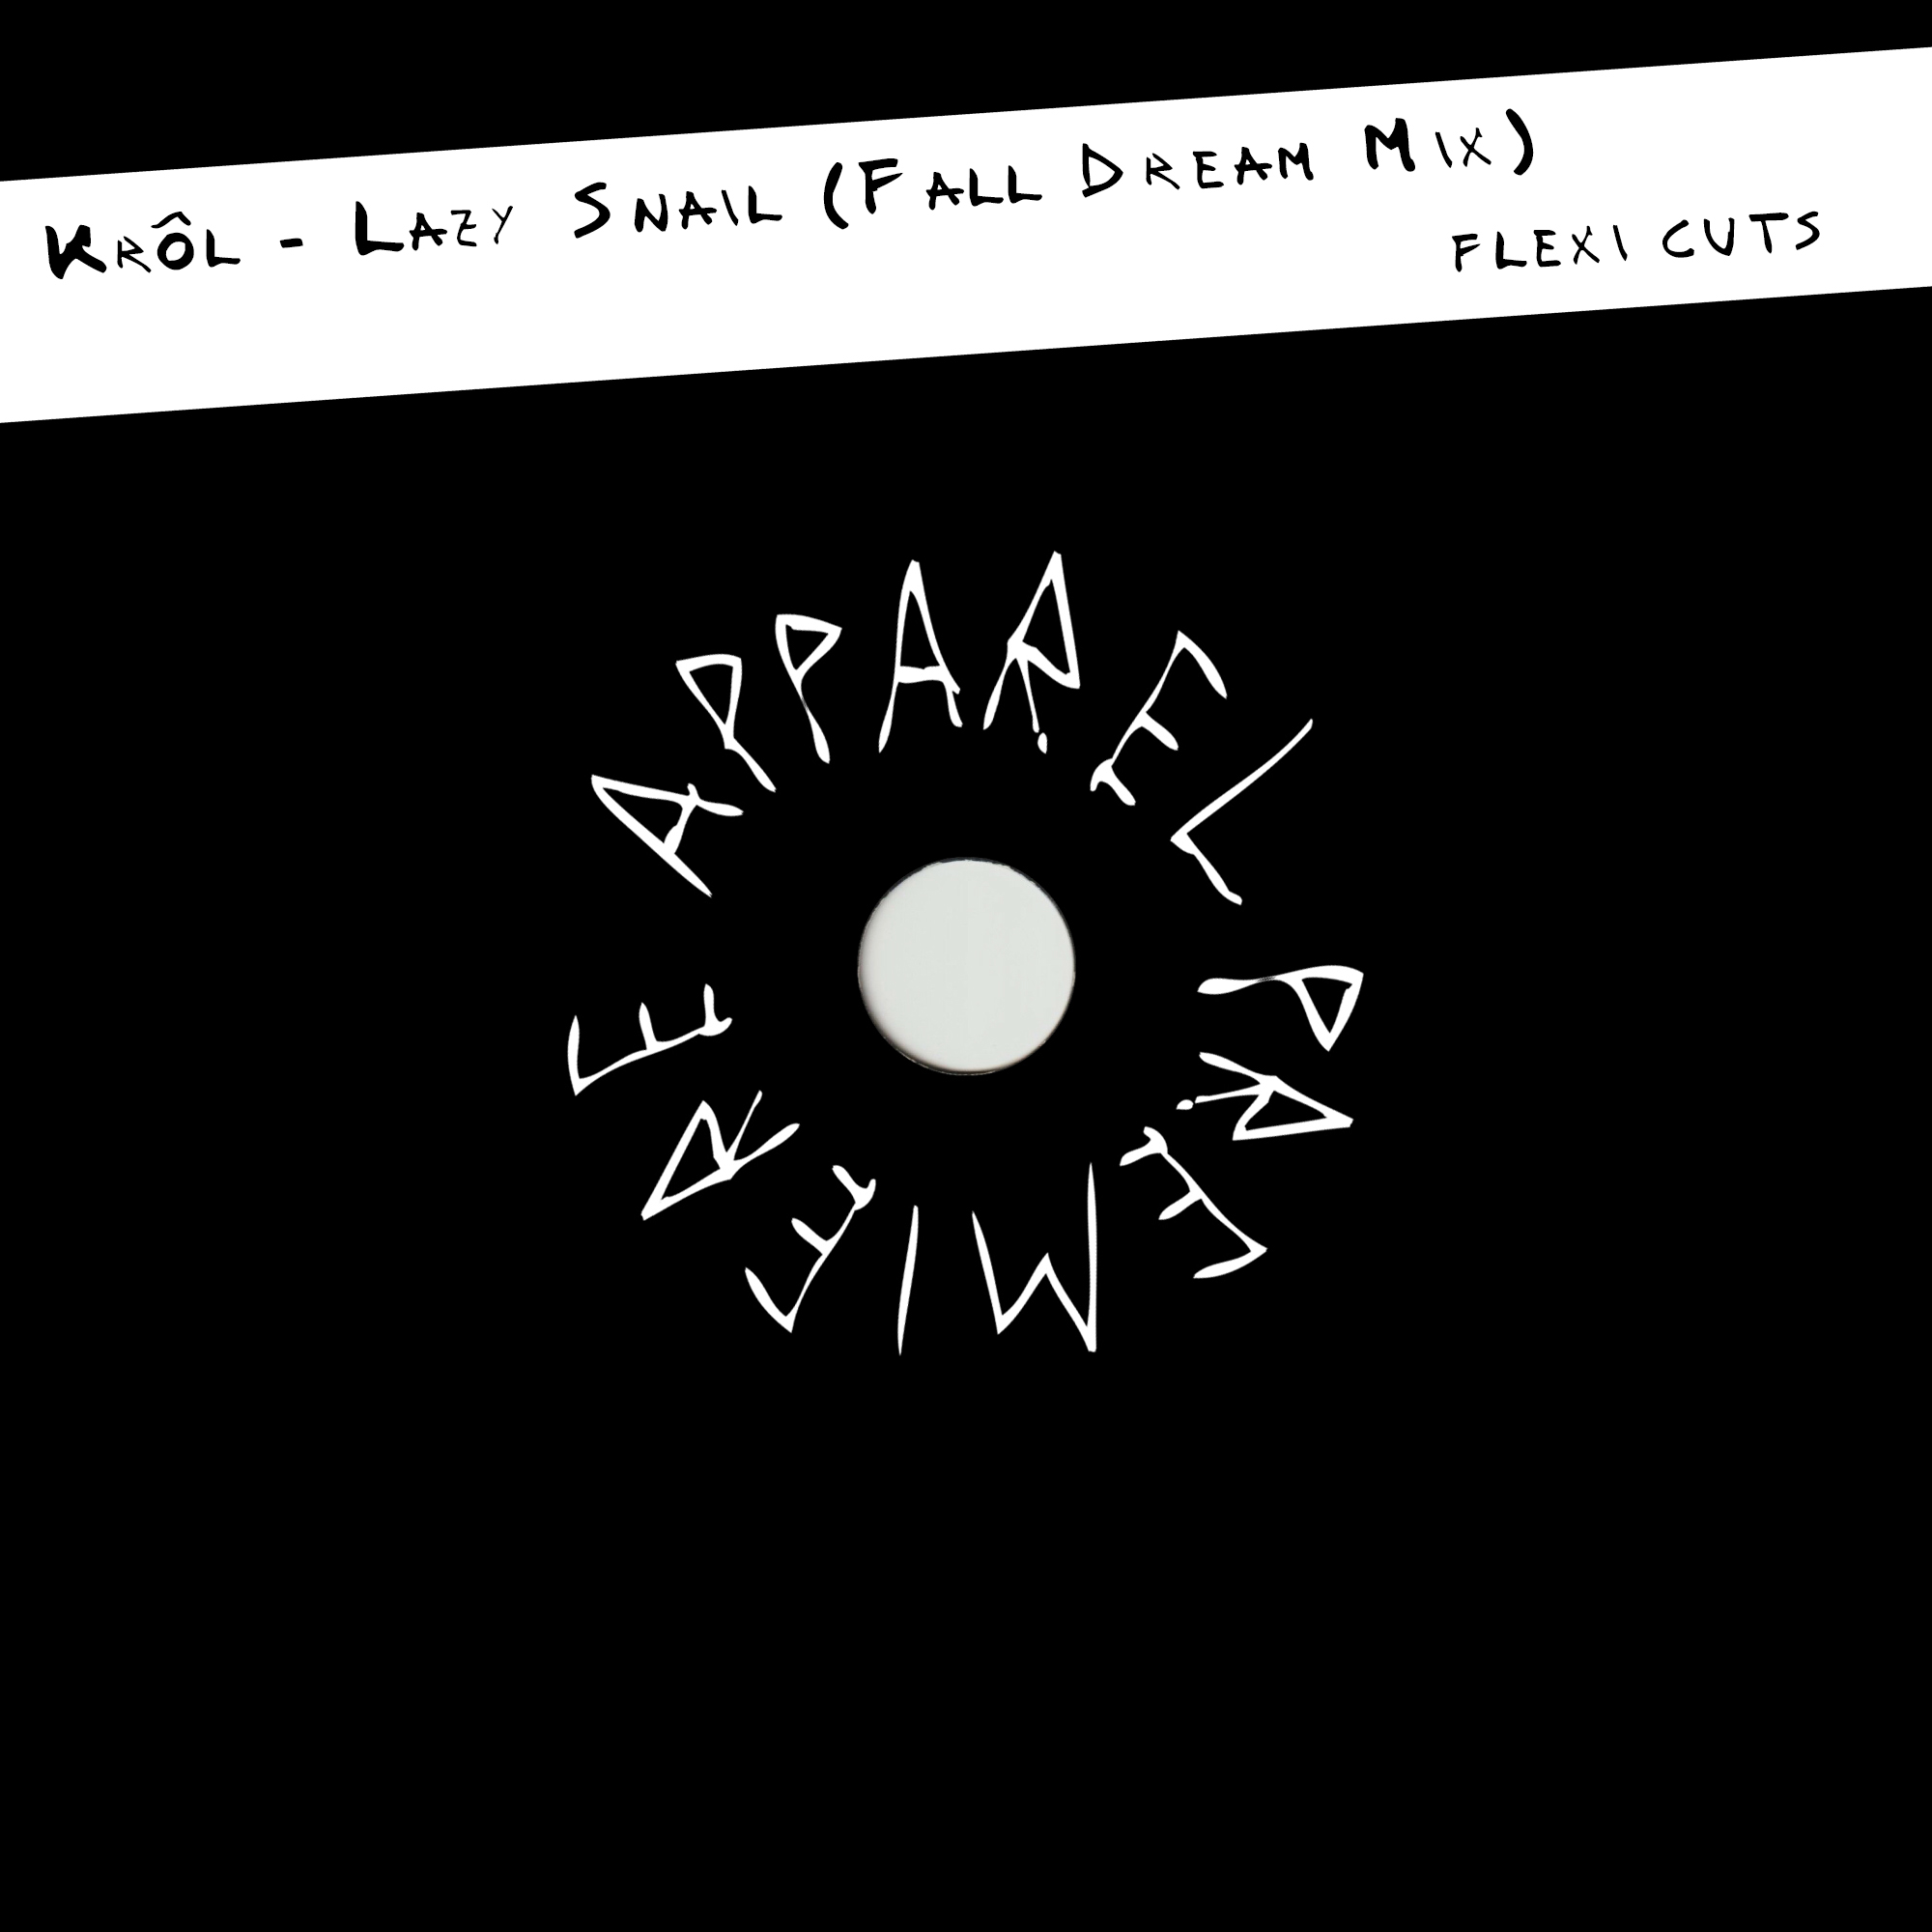 APPAREL PREMIERE Kròl – Lazy Snail (Fall Dream Mix) [Flexi Cuts]